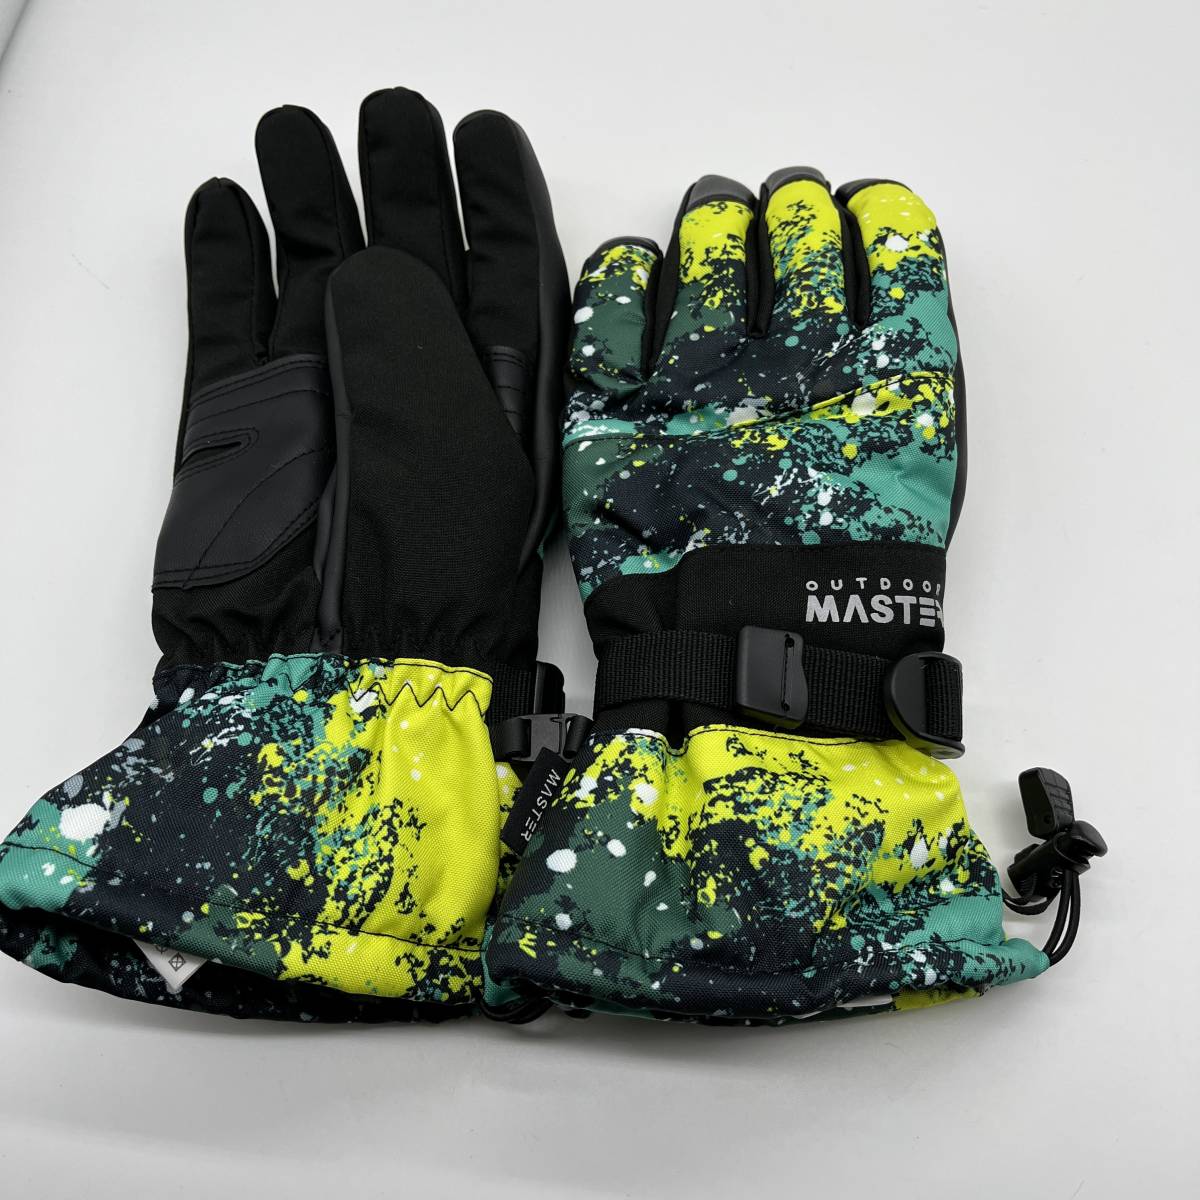 OUTDOORMASTER 防水 スノボ グローブ AKI1511 3Mシンサレート 手袋 メンズ レディース スキー グローブ 防寒 スノーボード Lサイズ_画像2